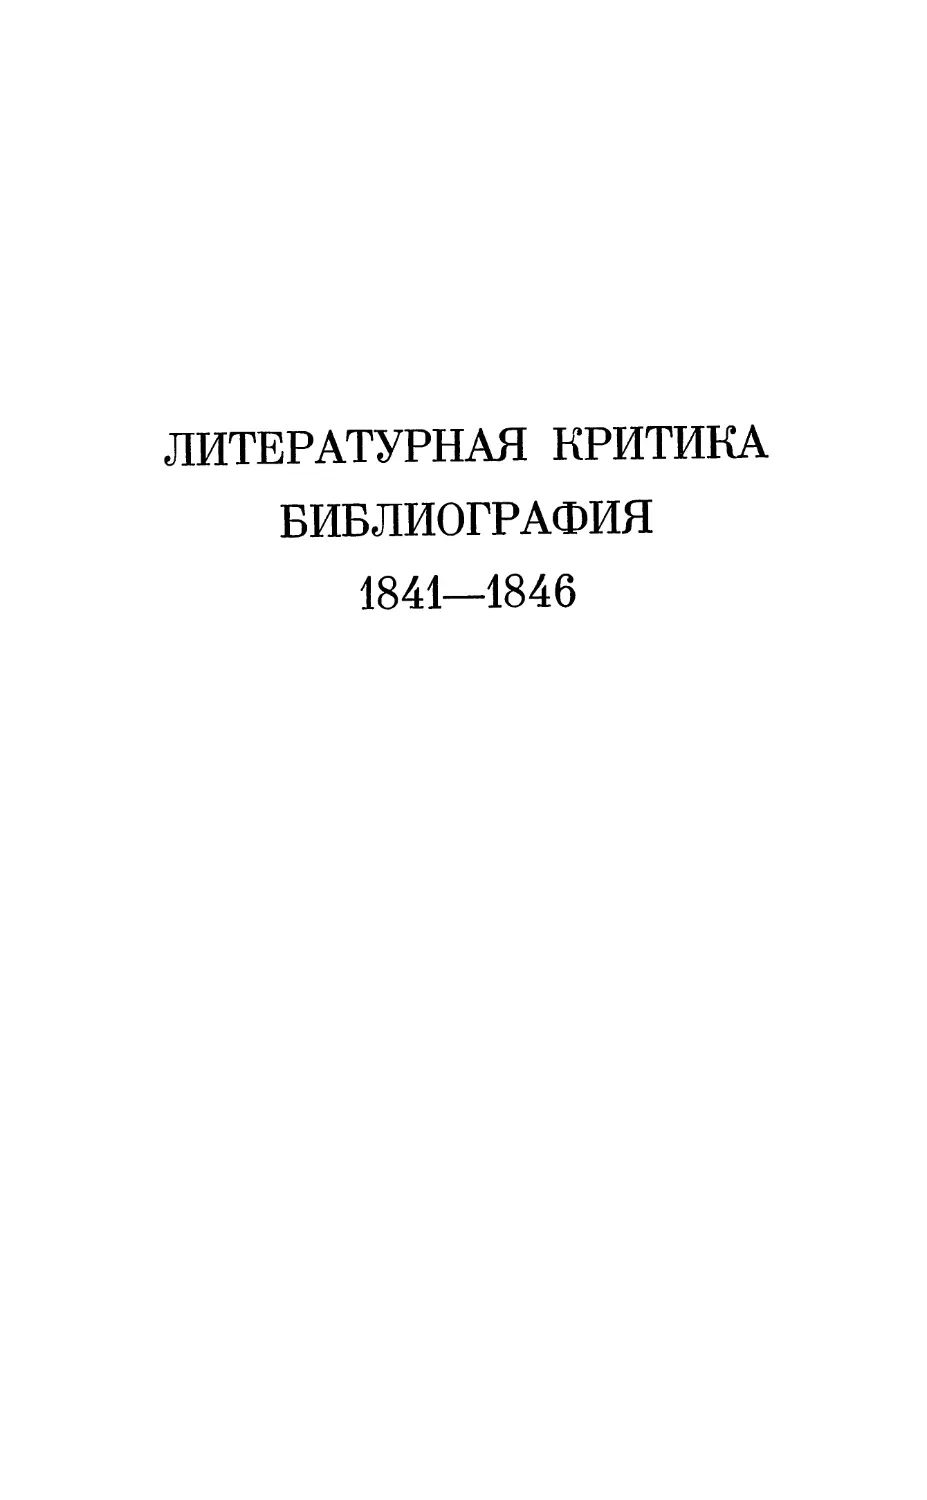 Литературная критика. Библиография. 1841—1846